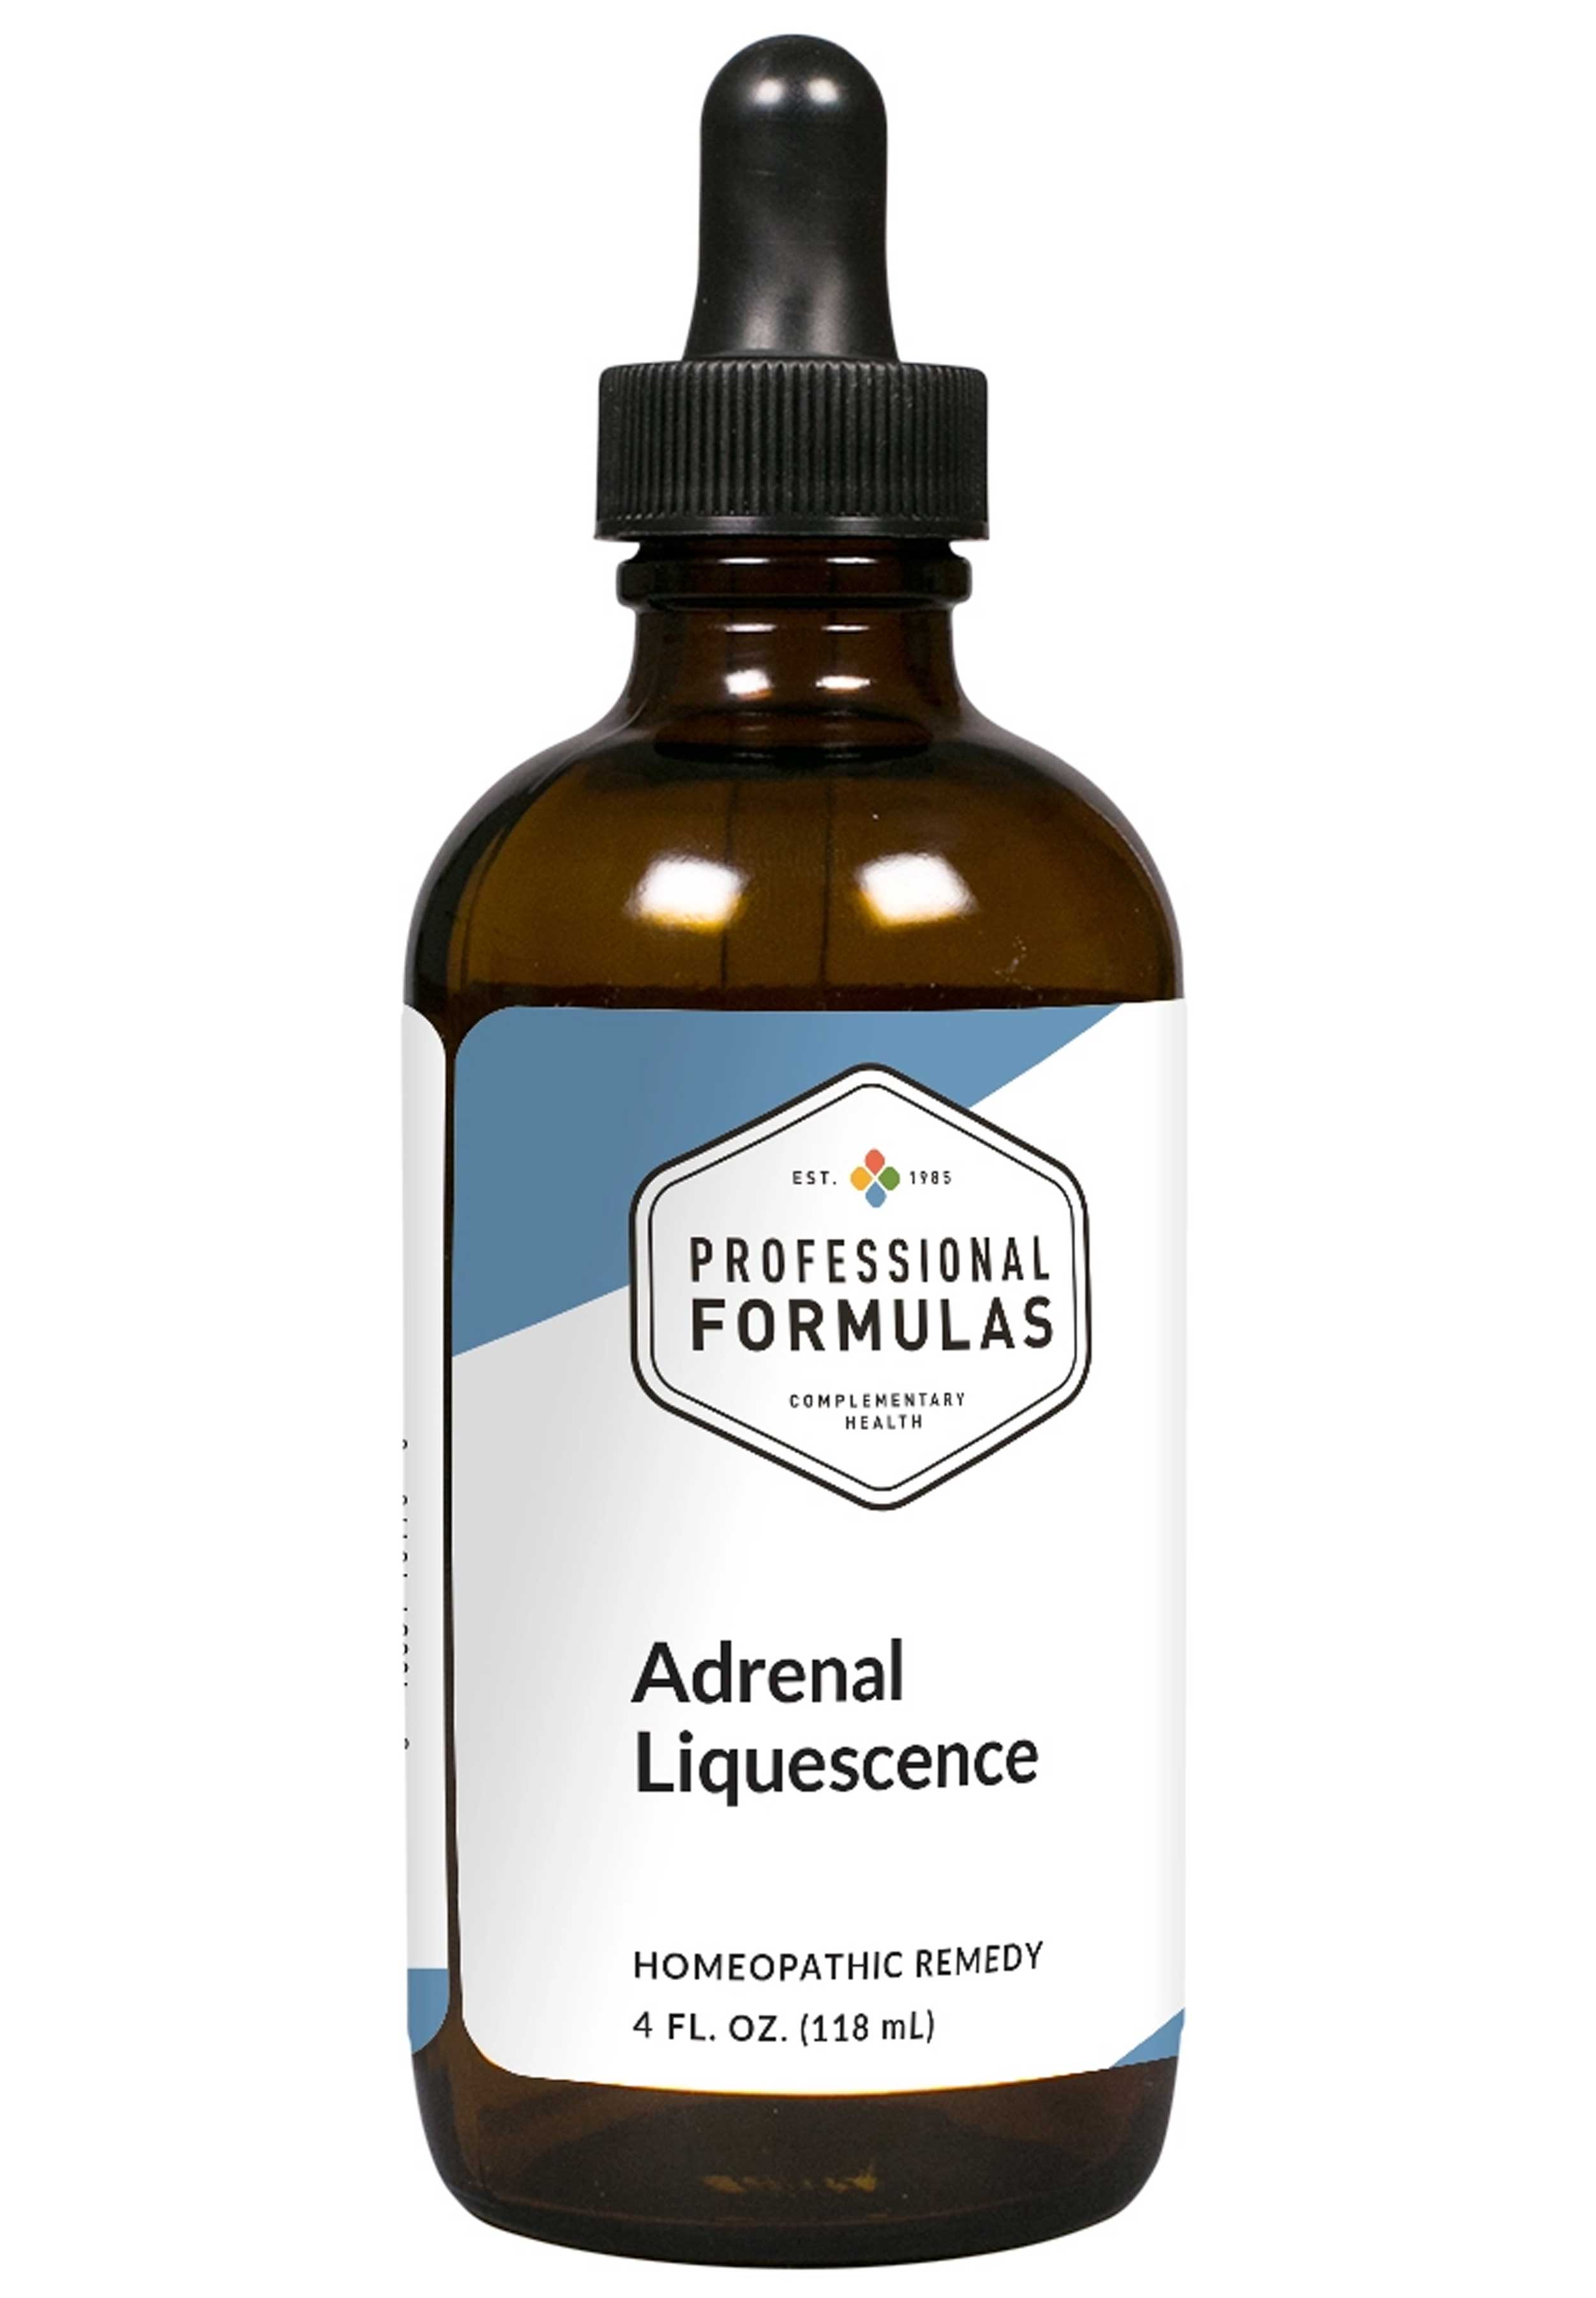 Professional Formulas Adrenal Liquescence